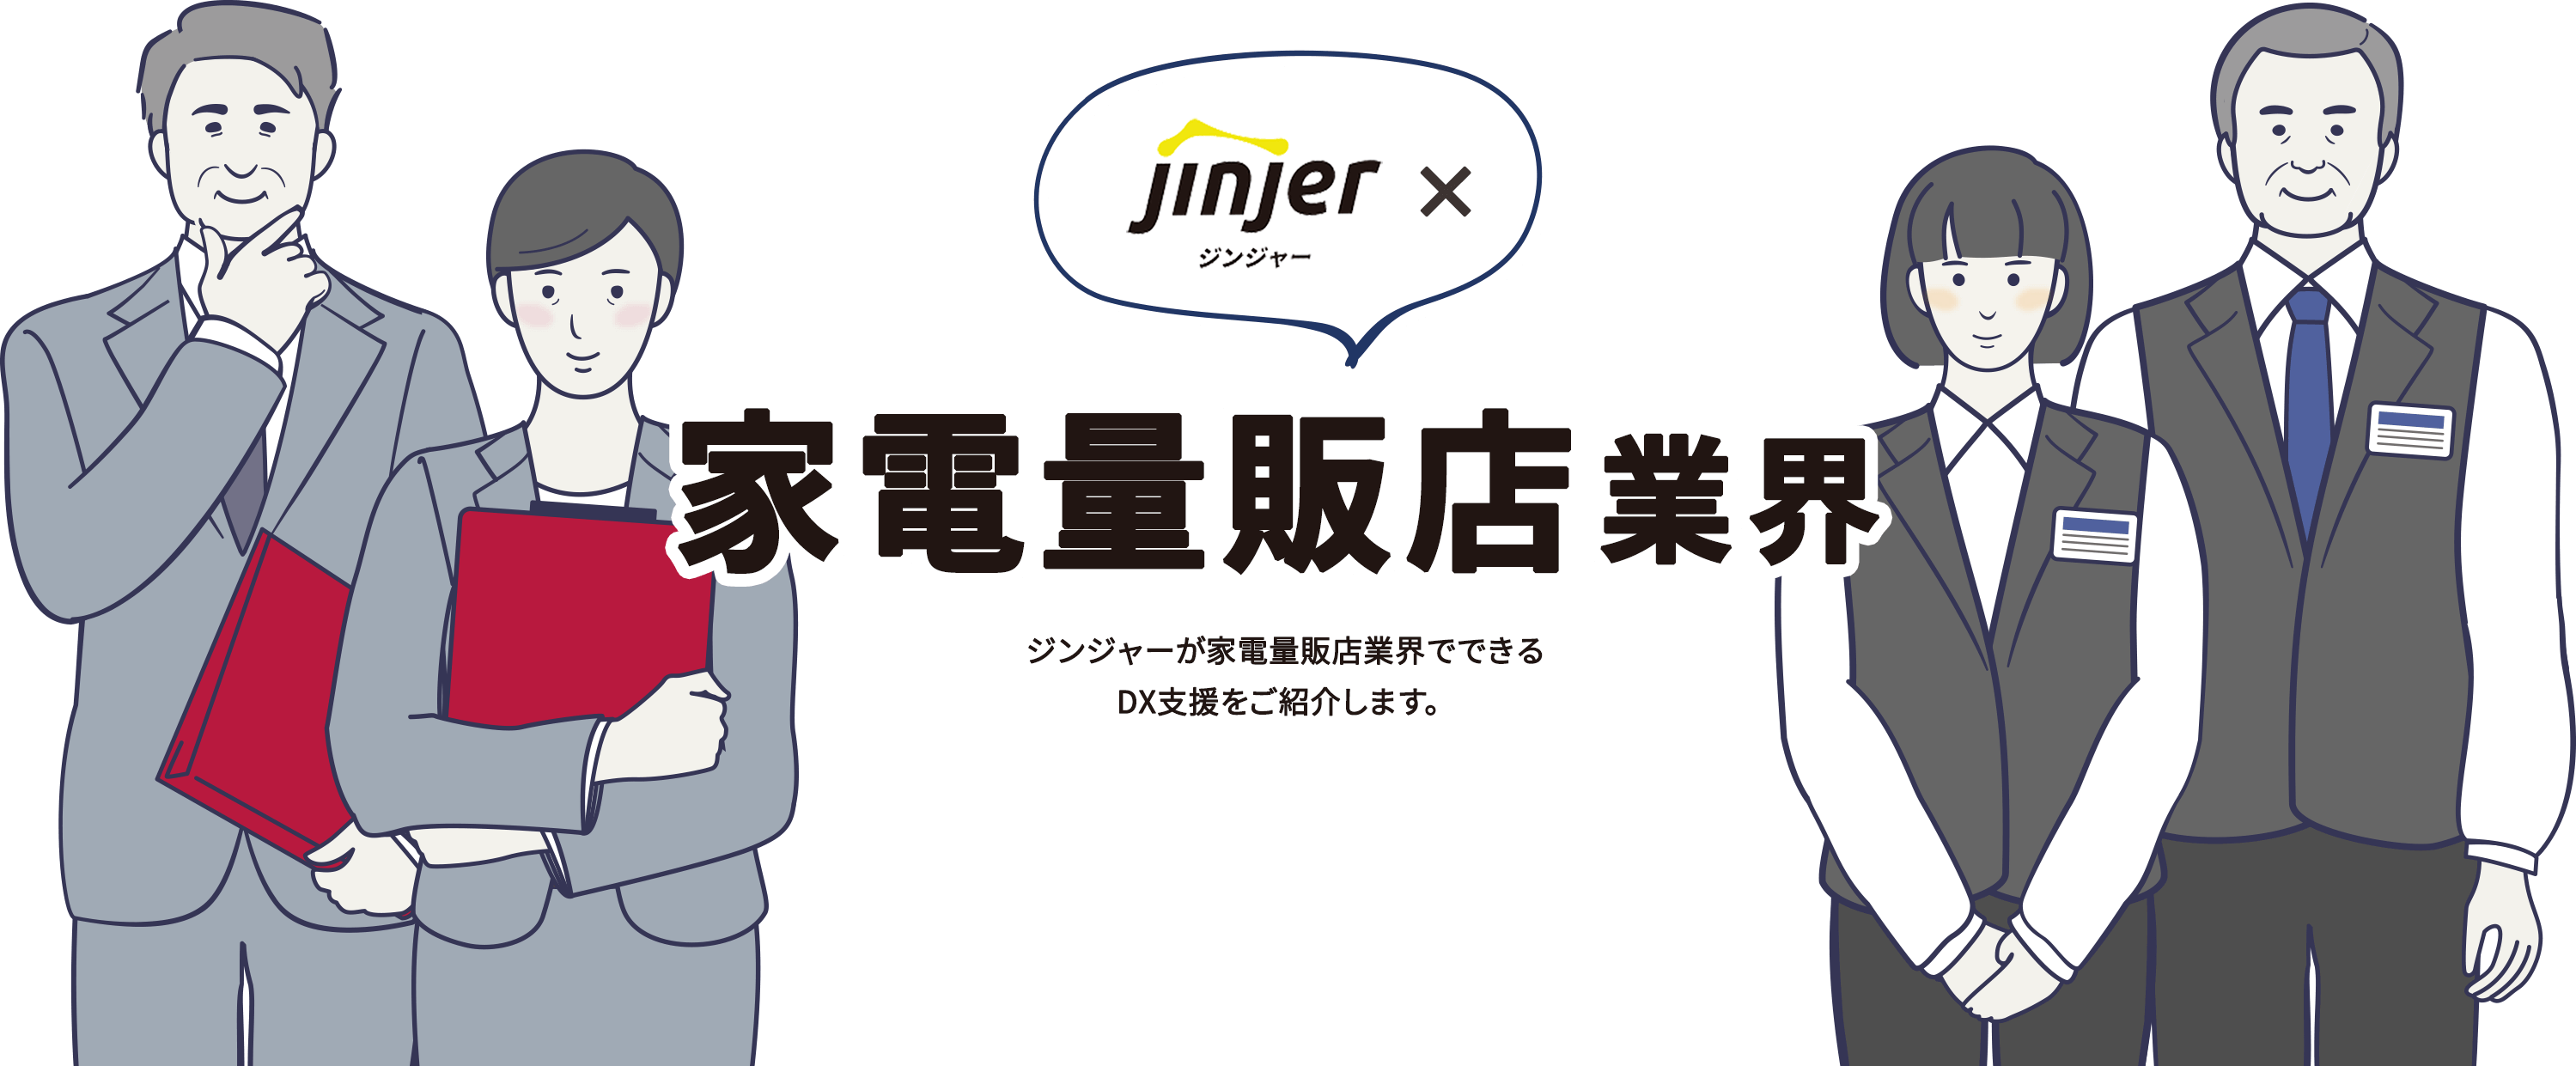 ジンジャー×家電量販店業界 ジンジャーが家電量販店業界でできるDX支援をご紹介します。